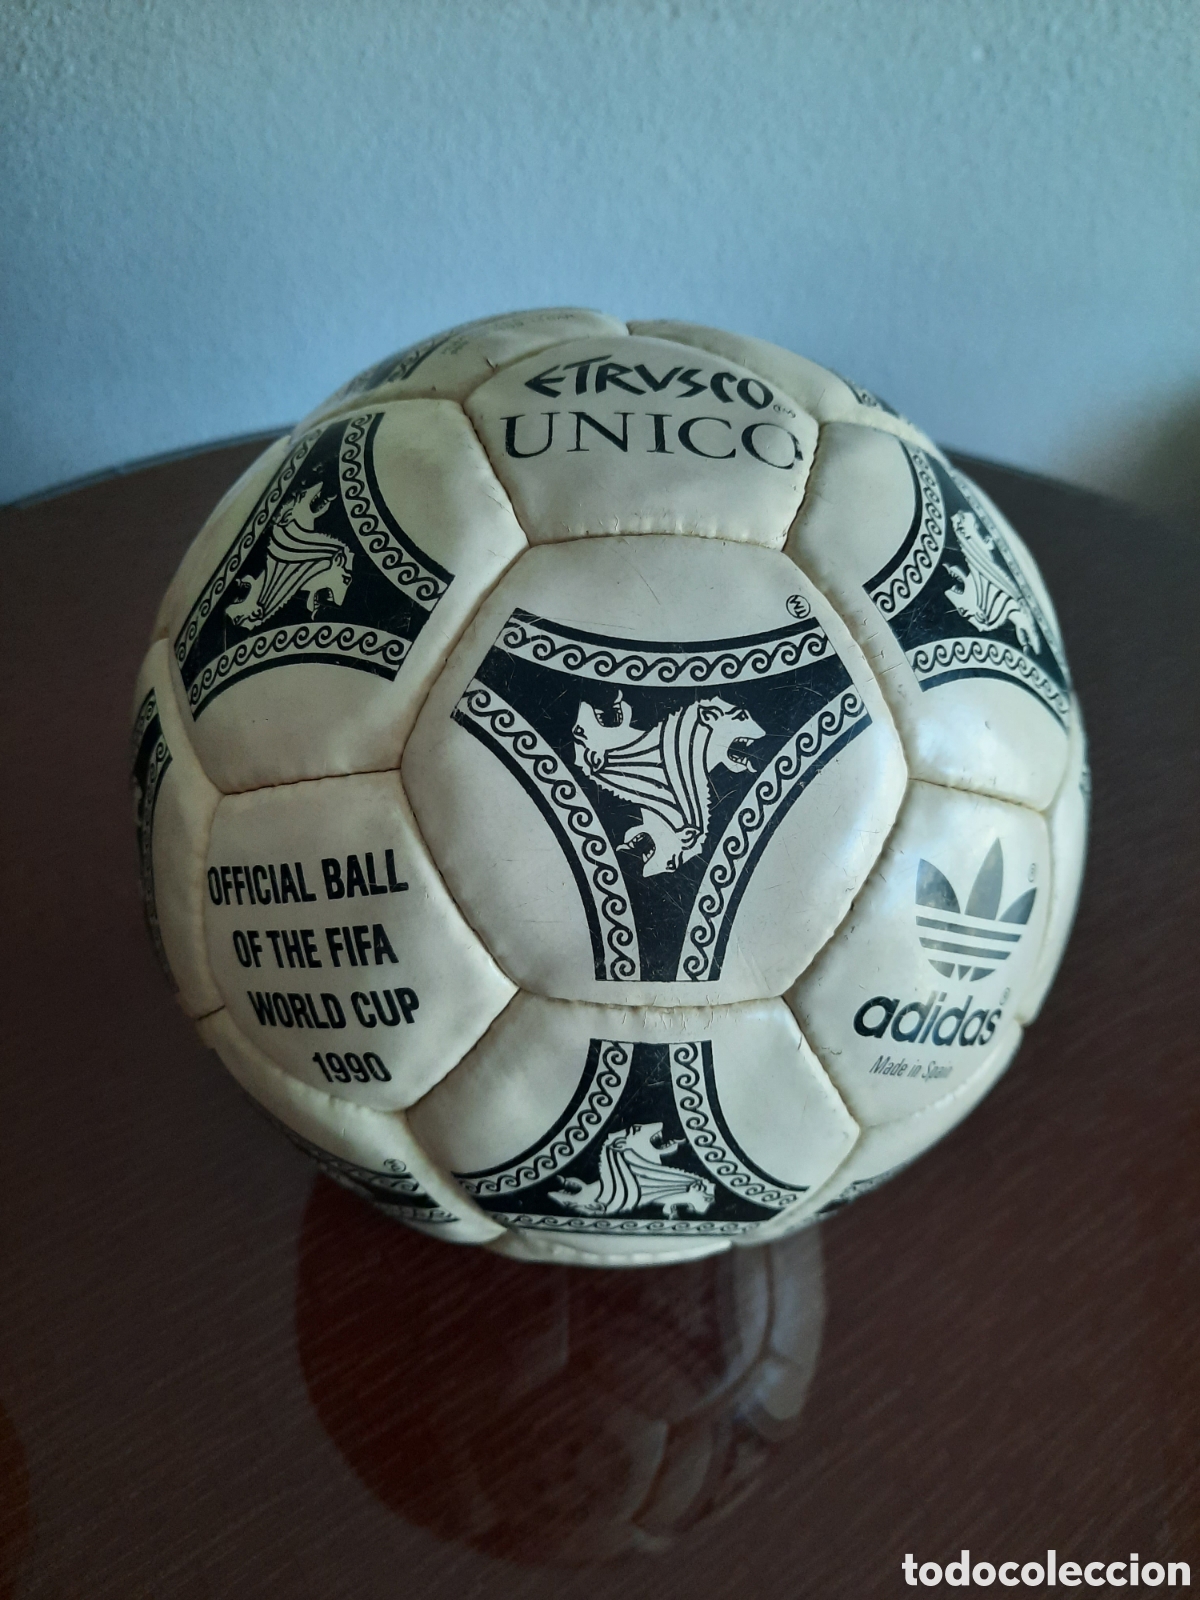 novia pozo dejar balón fútbol etrusco único 1990 - Compra venta en todocoleccion